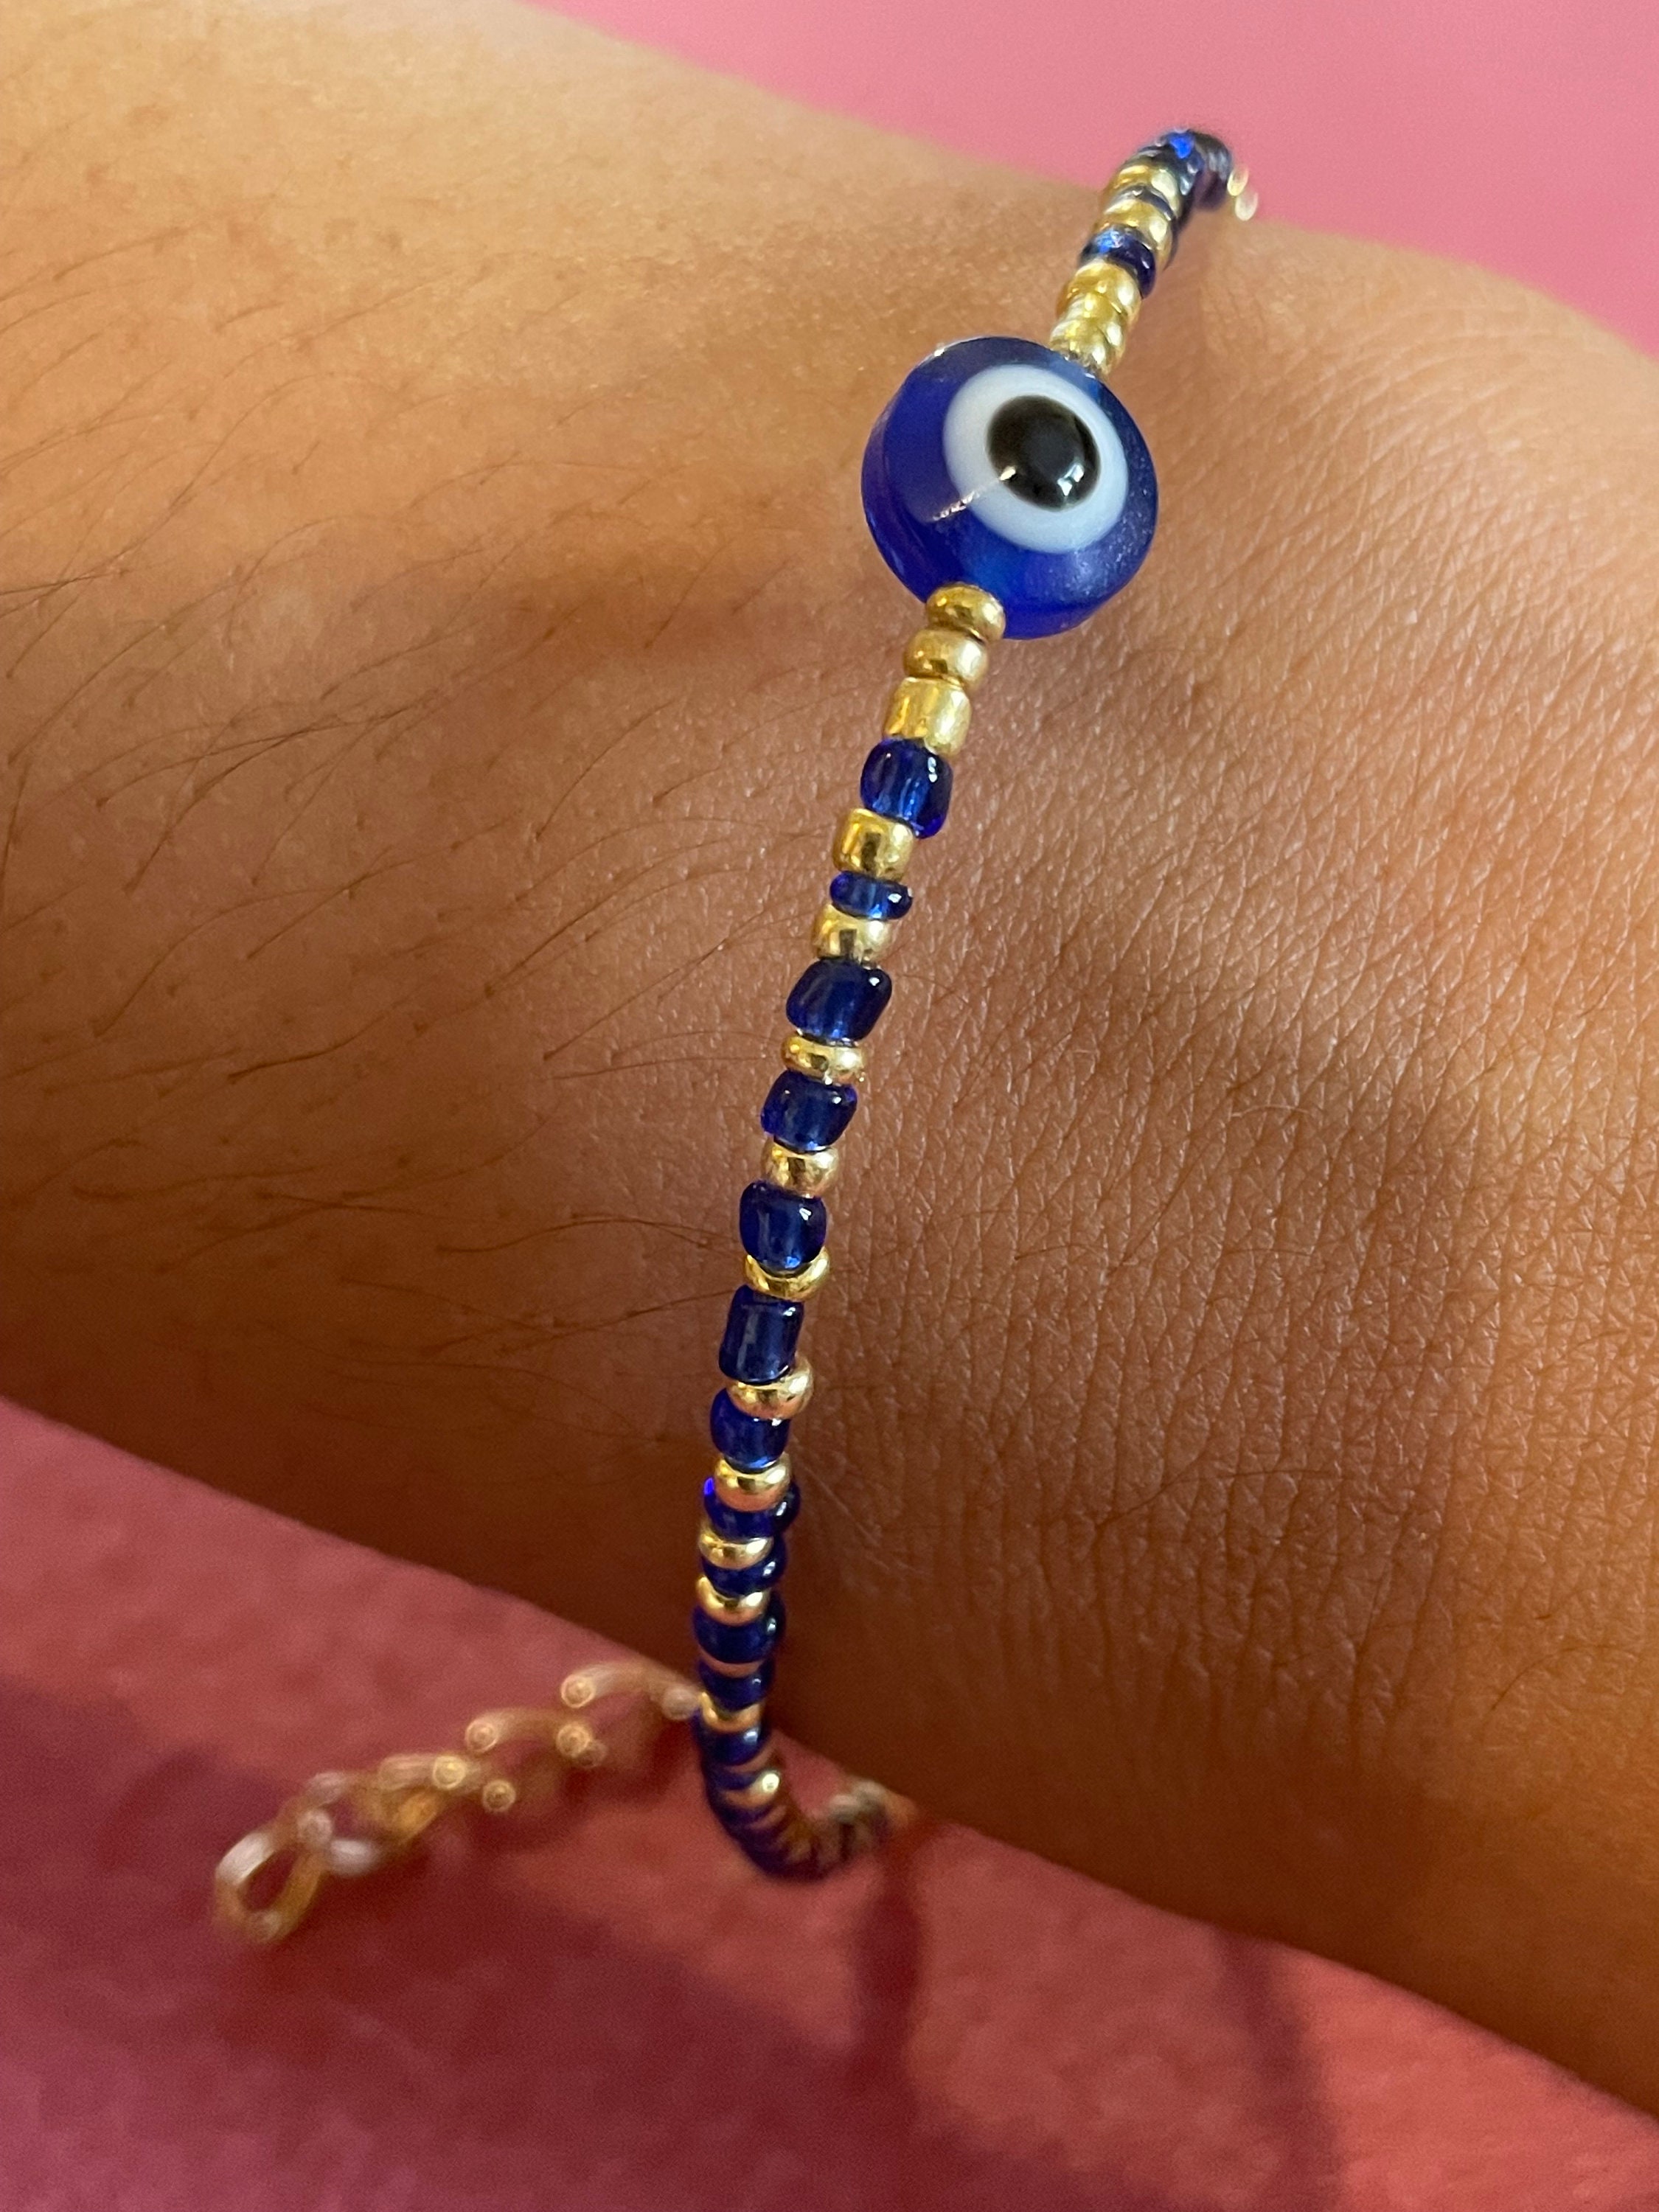 Buy Jaz's Evil Eye-Buri Nazar-Buri Drishti-Nazar Suraksha-Blue Beads  Bracelet-Good Luck Protection Beads at Amazon.in